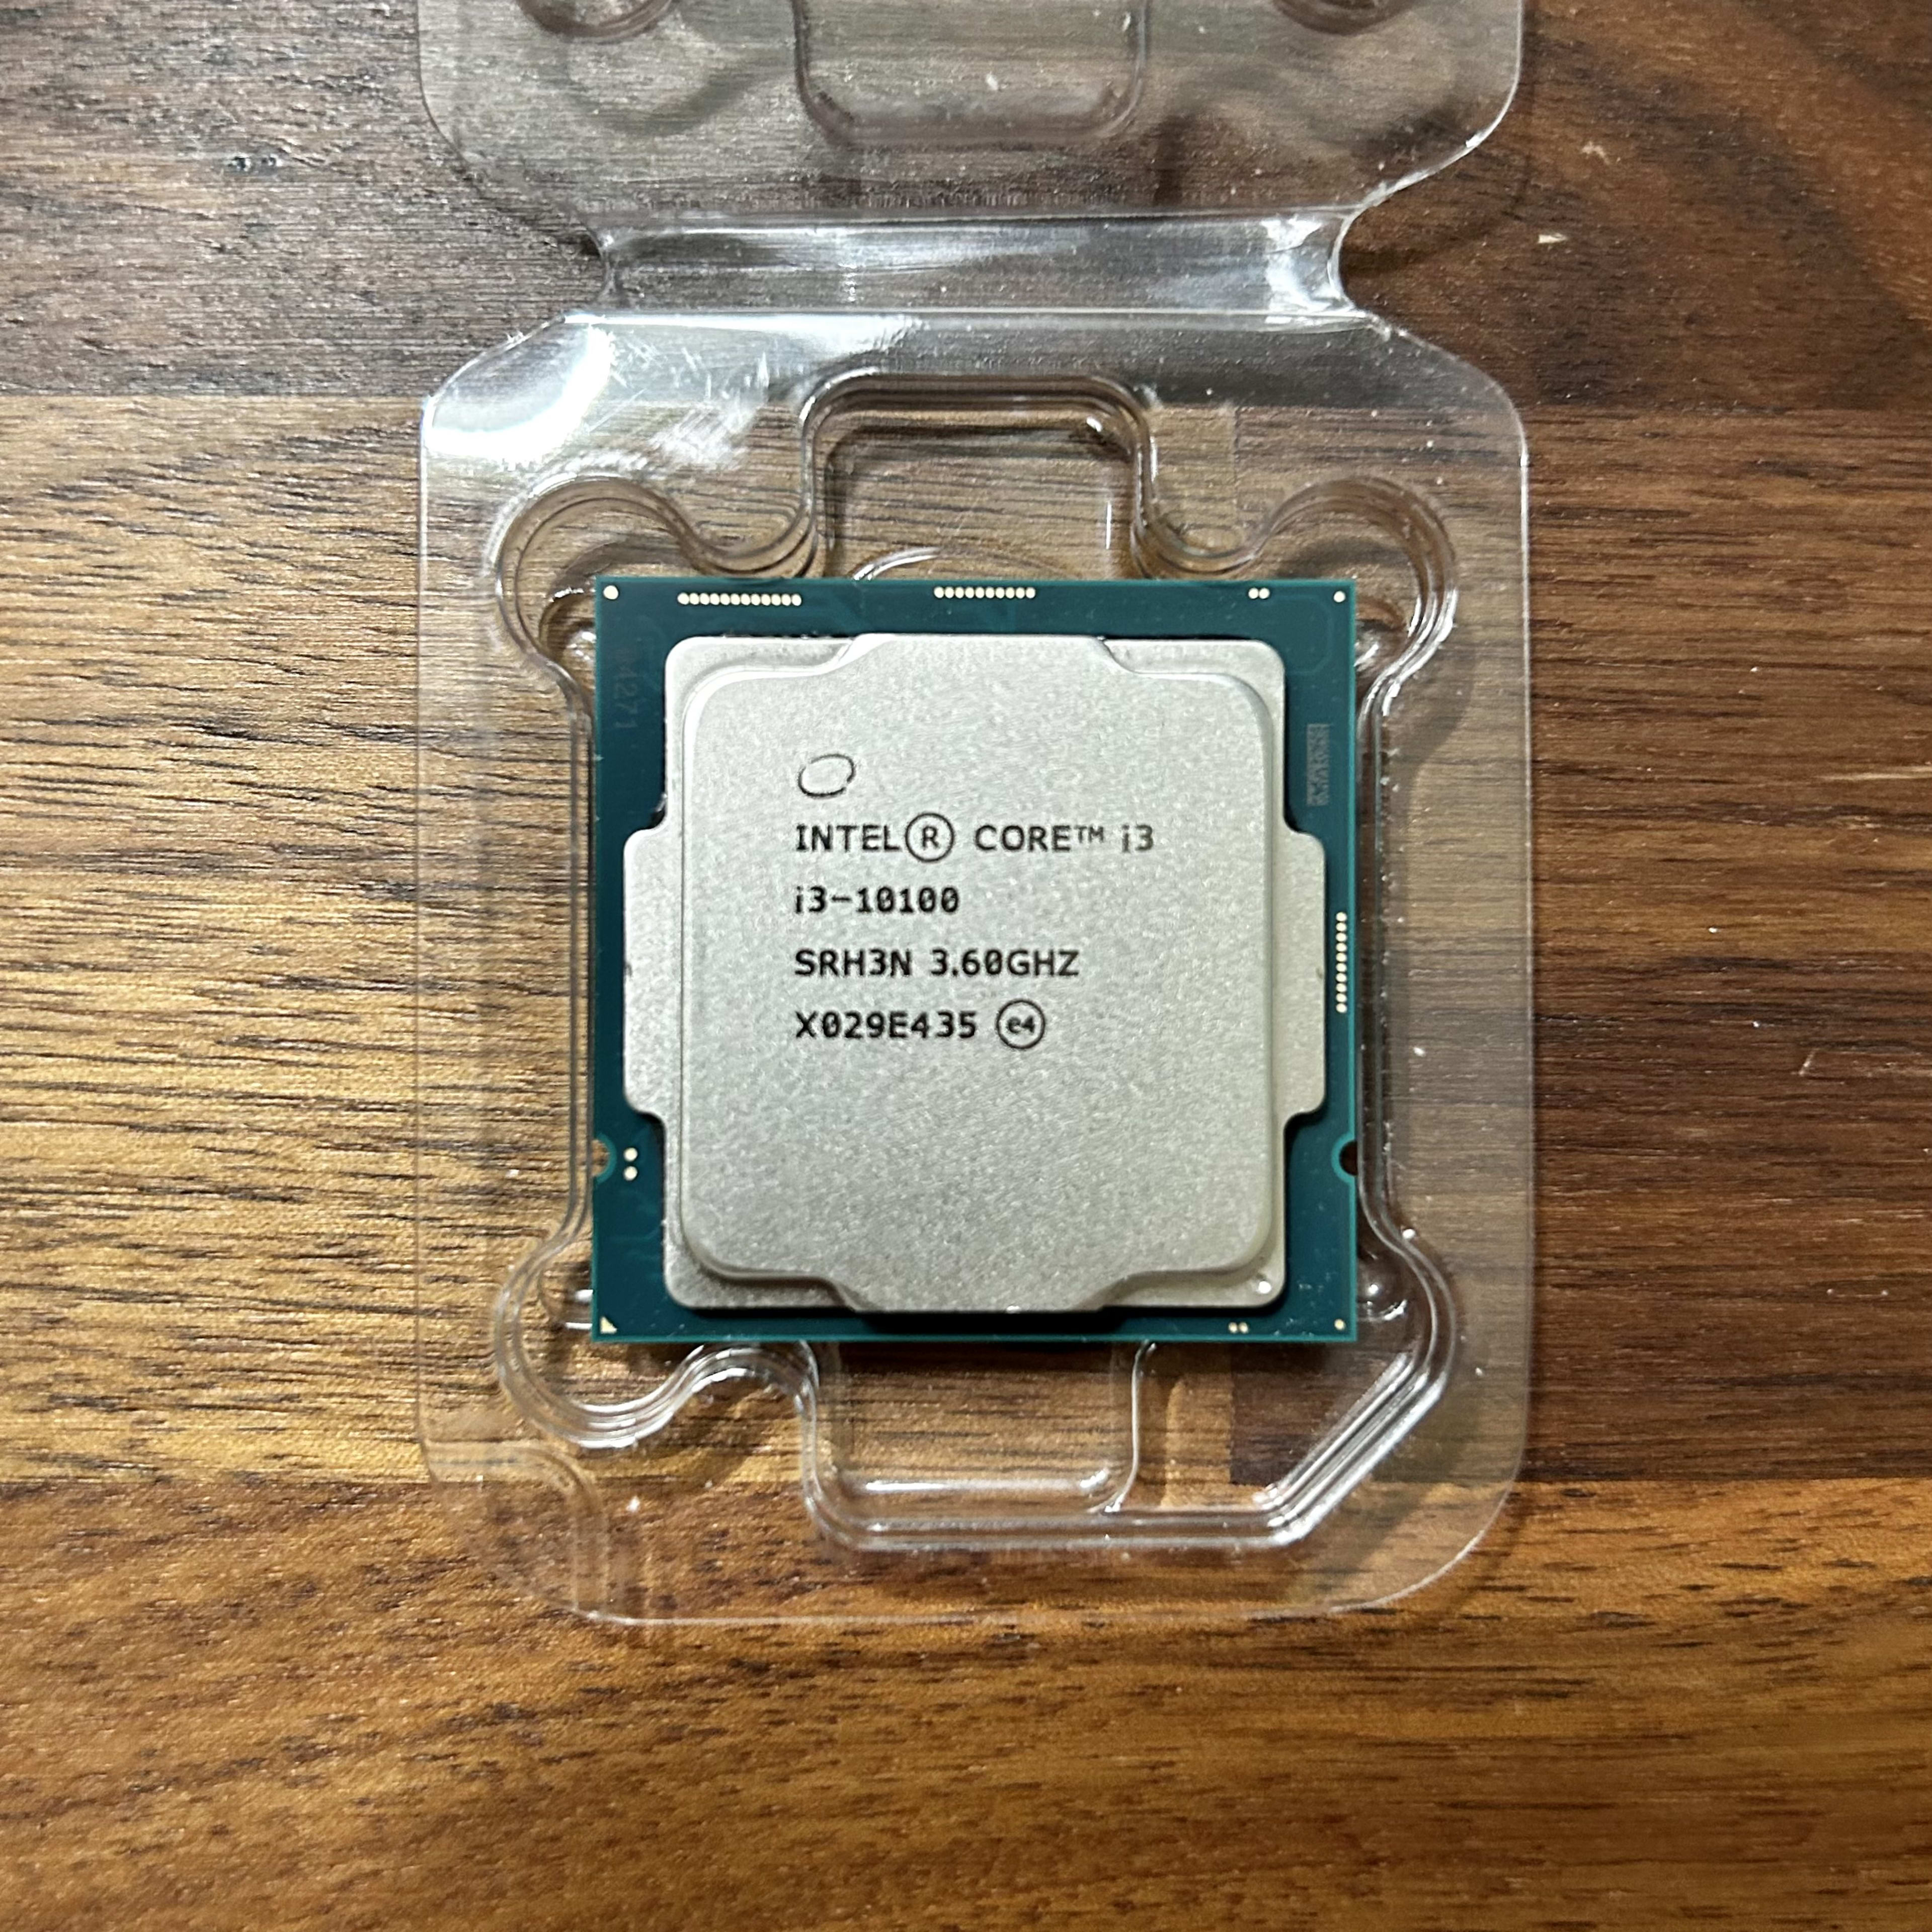 Intel Core i3-10100 Specs